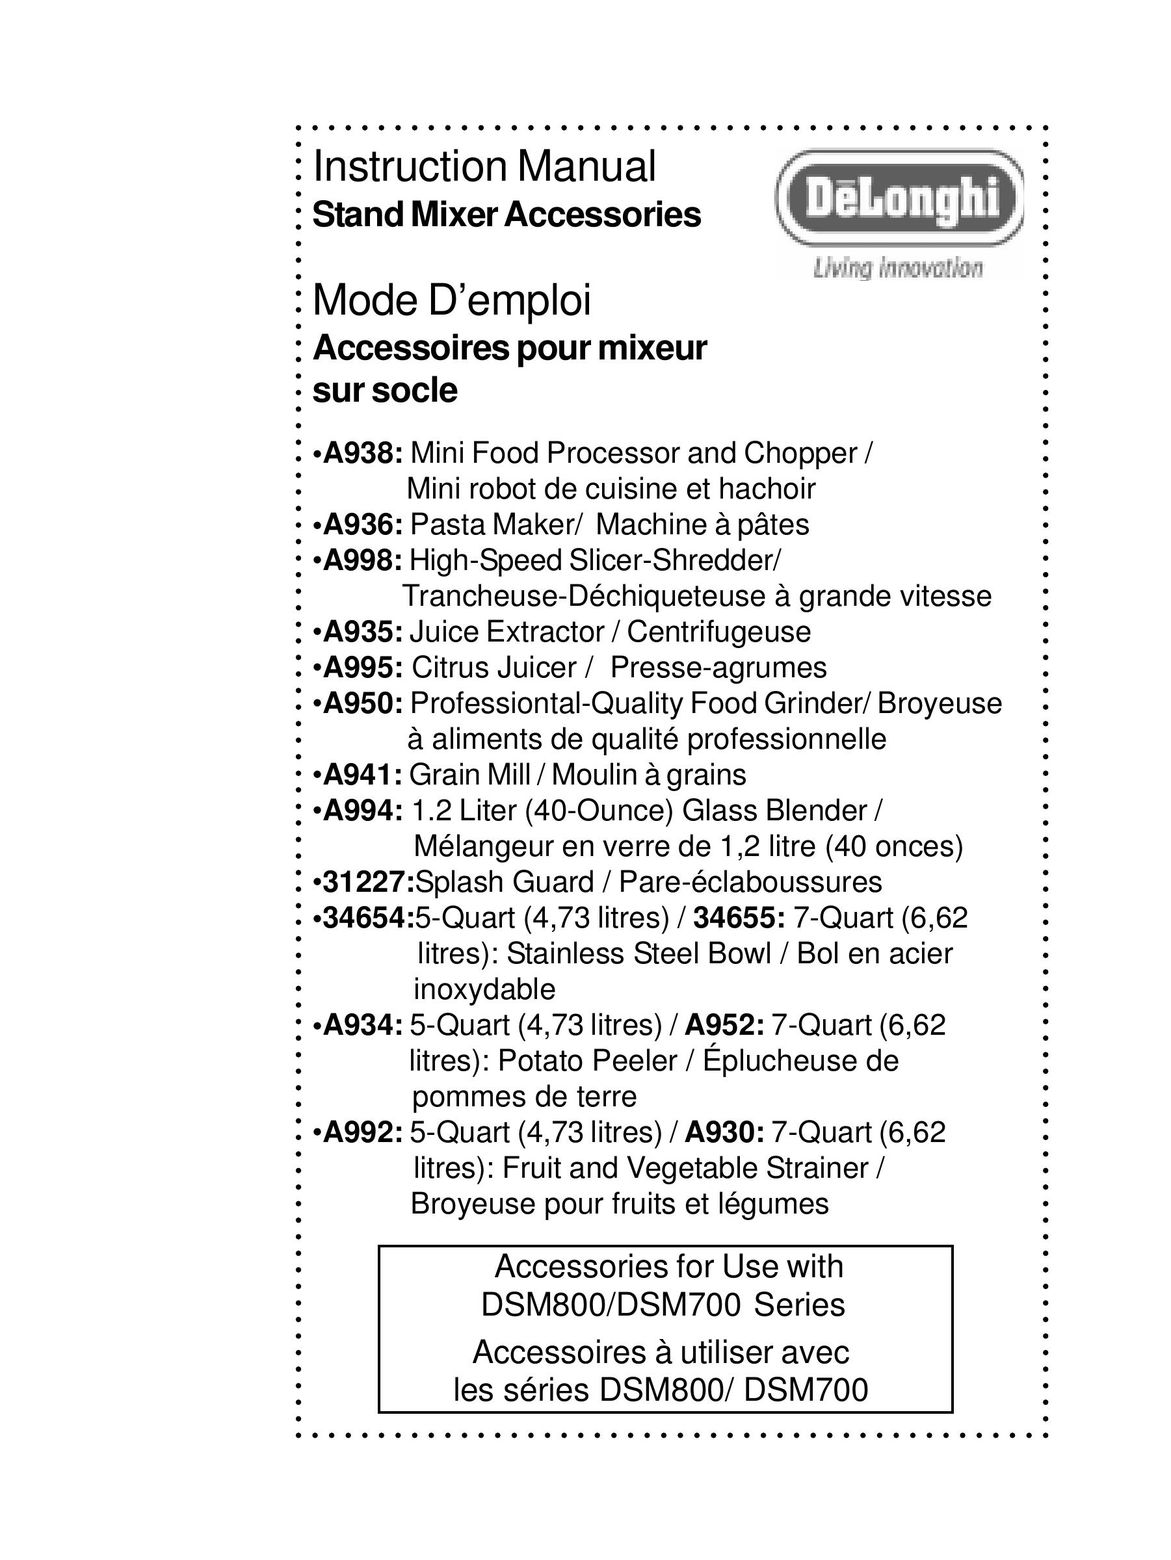 DeLonghi DSM800 Mixer User Manual